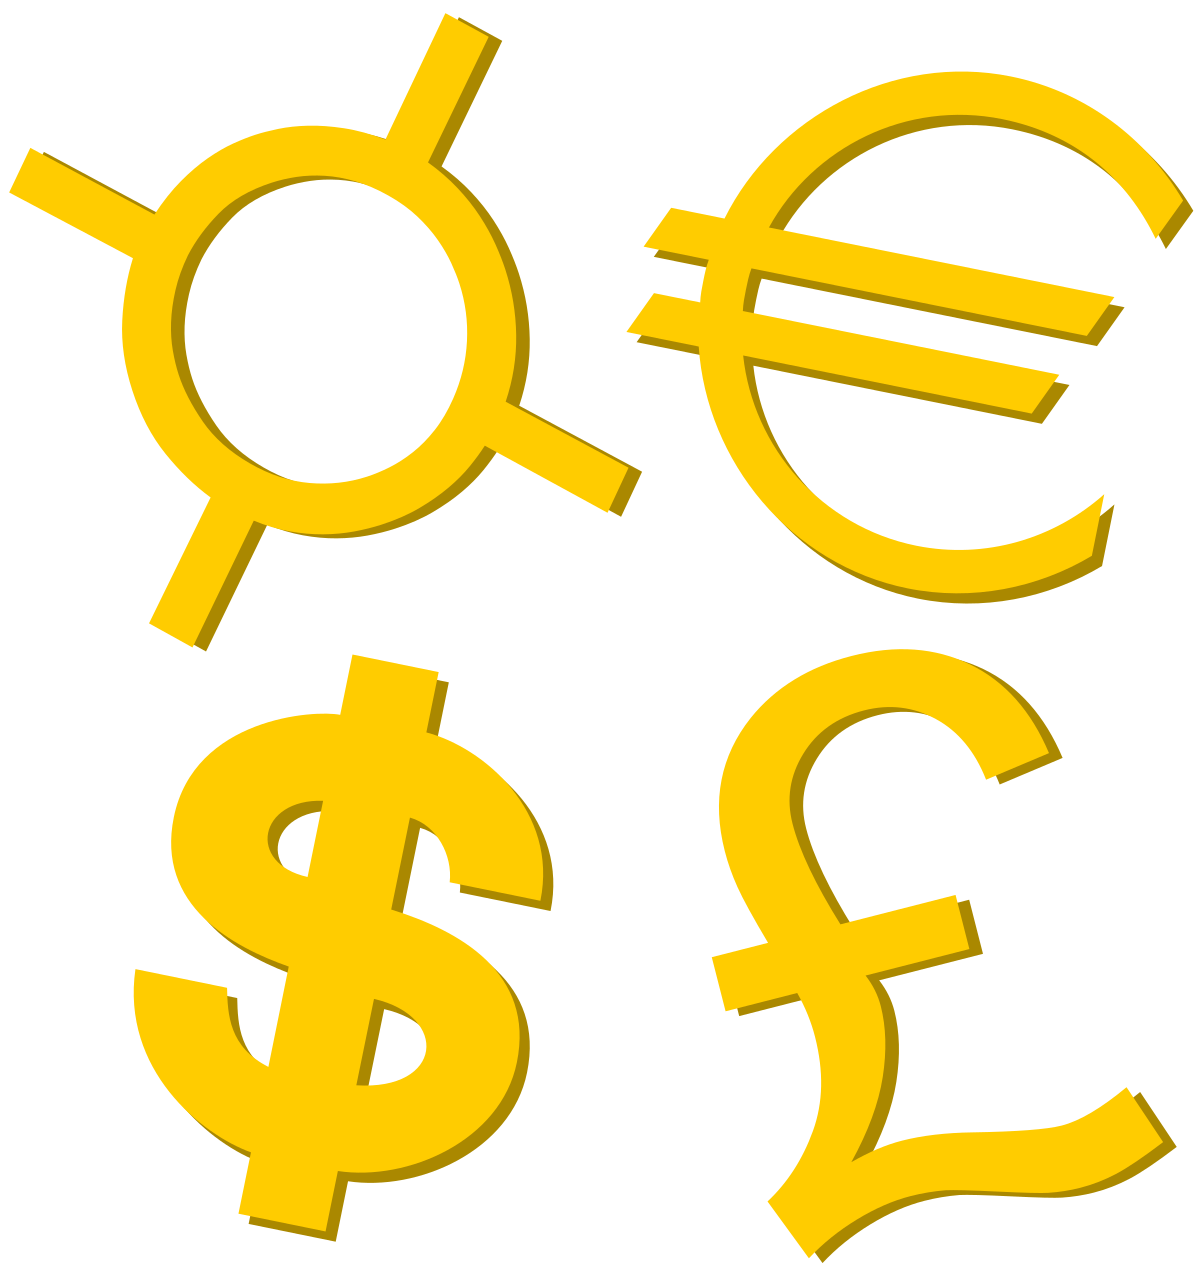 Biểu tượng tiền tệ: Hình ảnh liên quan đến biểu tượng tiền tệ sẽ giúp bạn hiểu thêm về các loại tiền tệ trên thế giới và đặc biệt là điều kiện kinh tế của mỗi quốc gia.